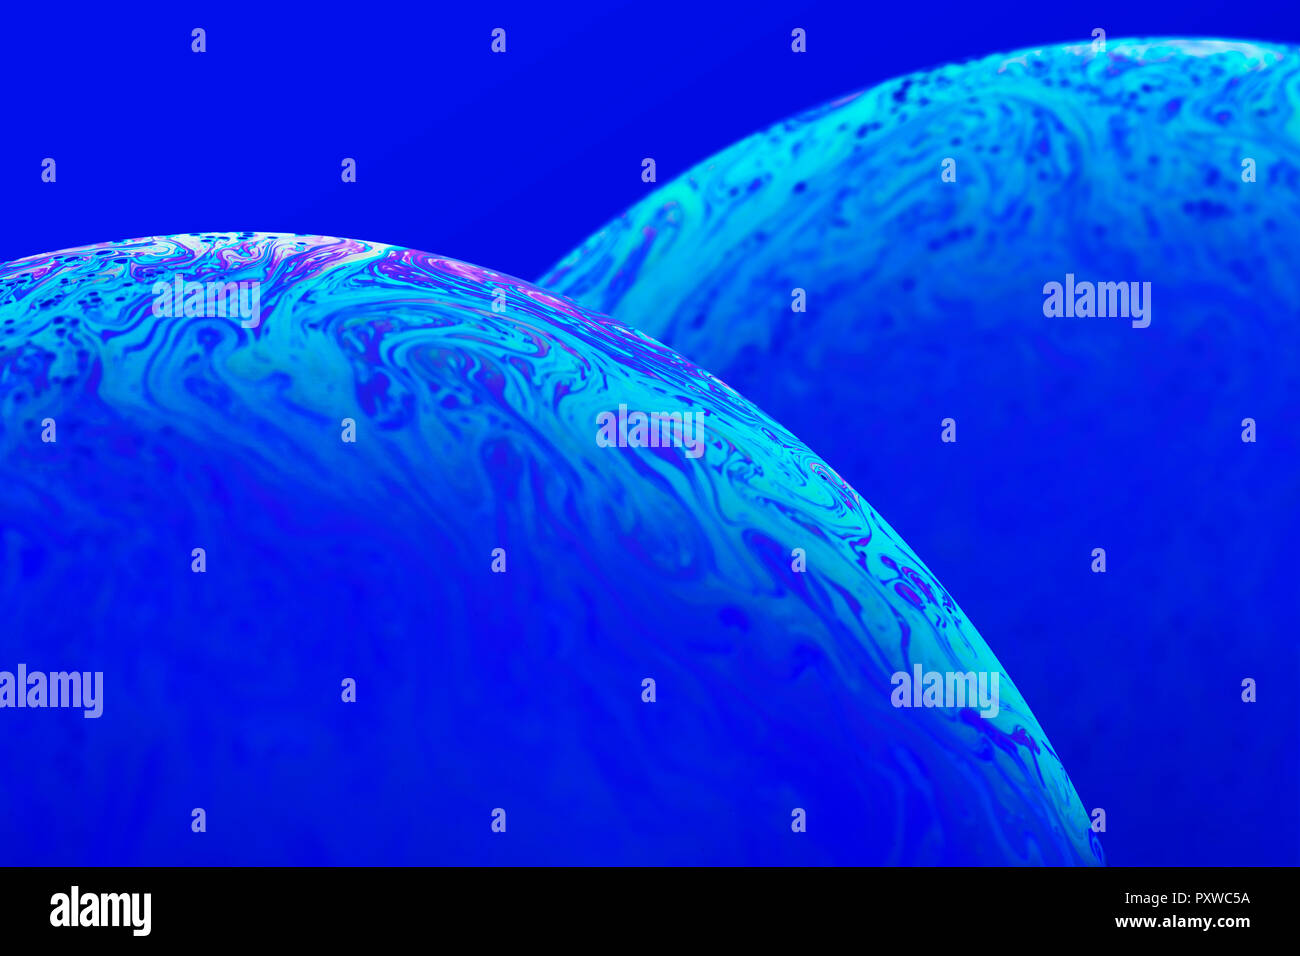 Oberfläche der blauen Seifenblasen, close-up Stockfoto